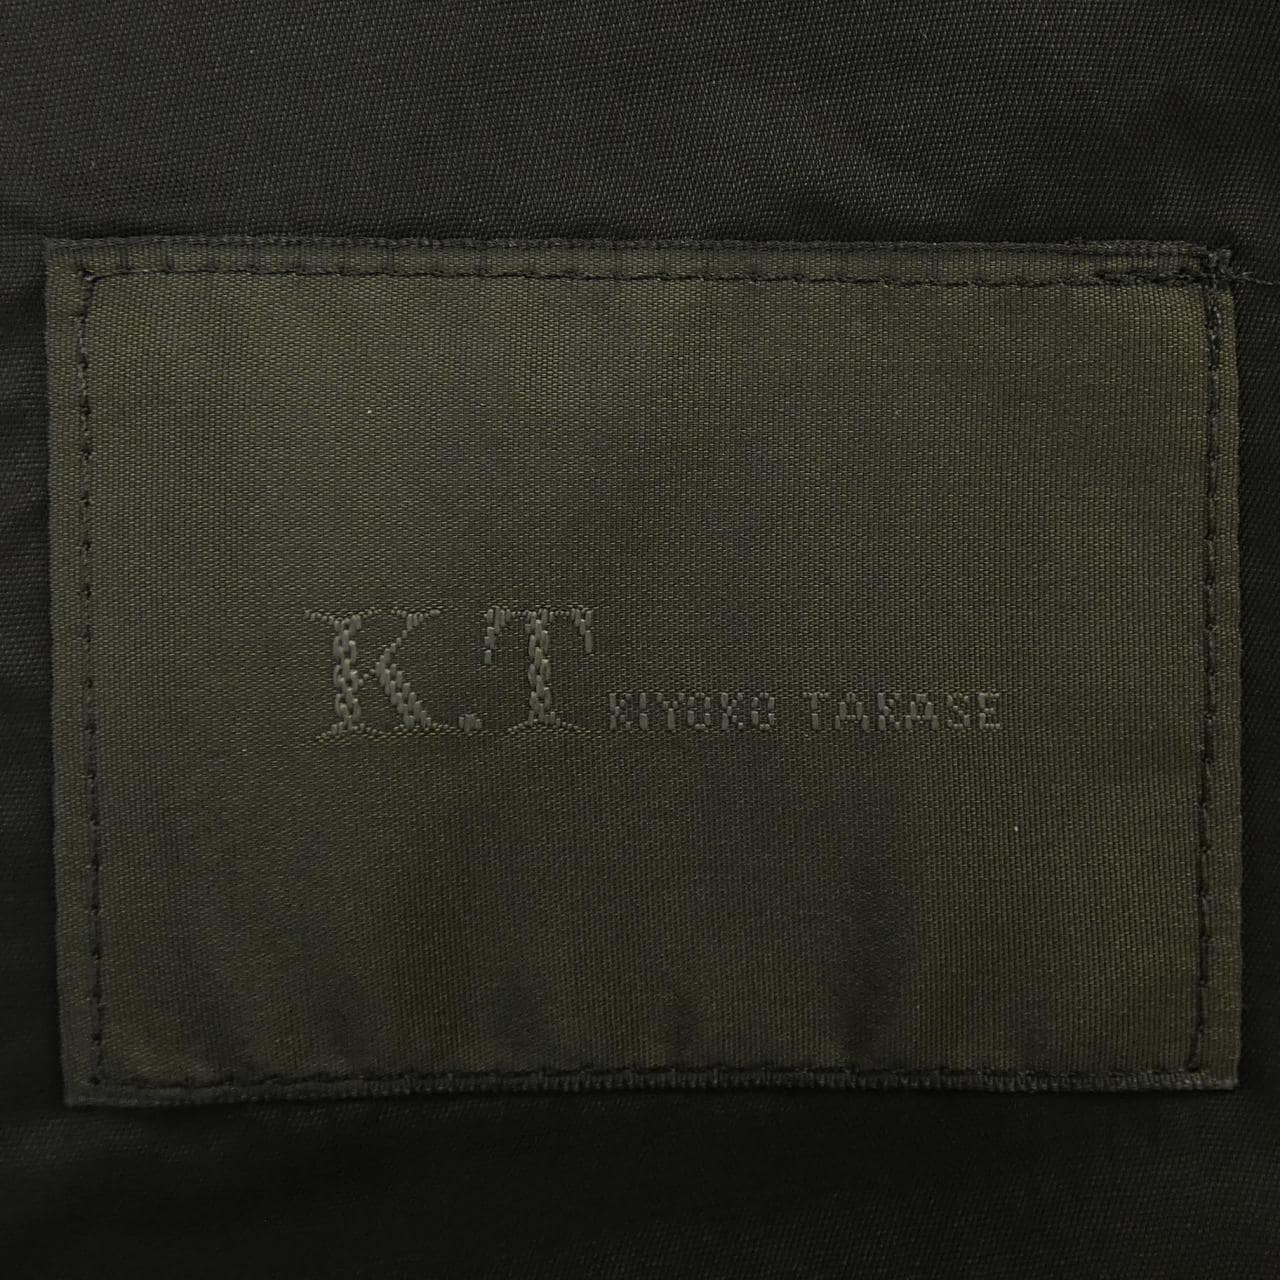 Kiyoko Takase KT Jacket